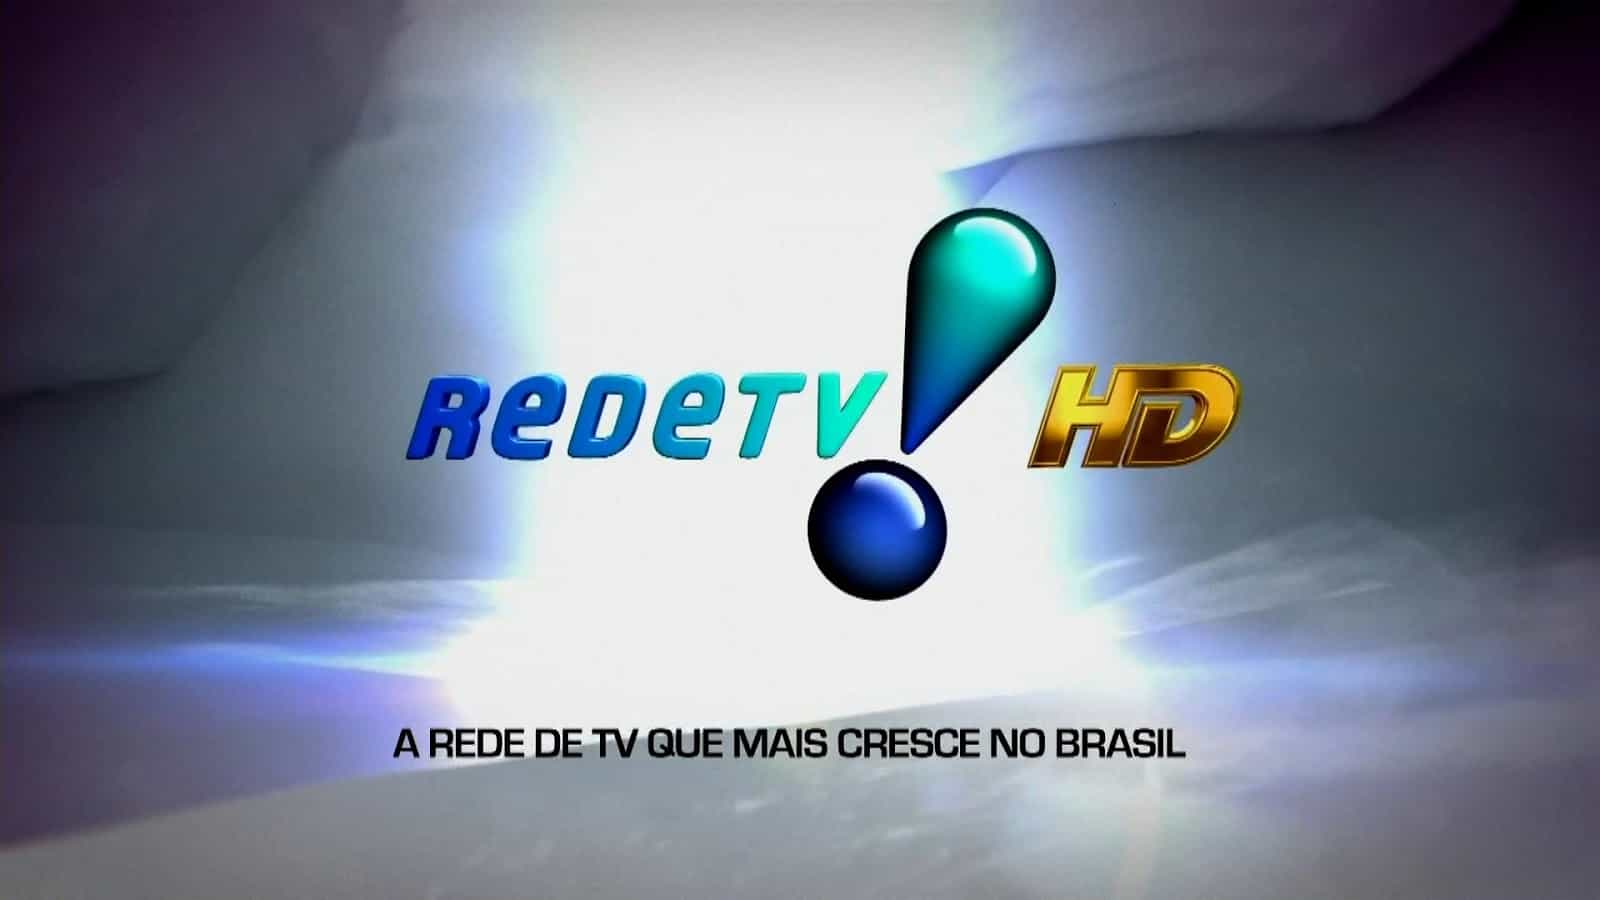 RedeTV! conquista 1 milhão de inscritos em seu canal no YouTube